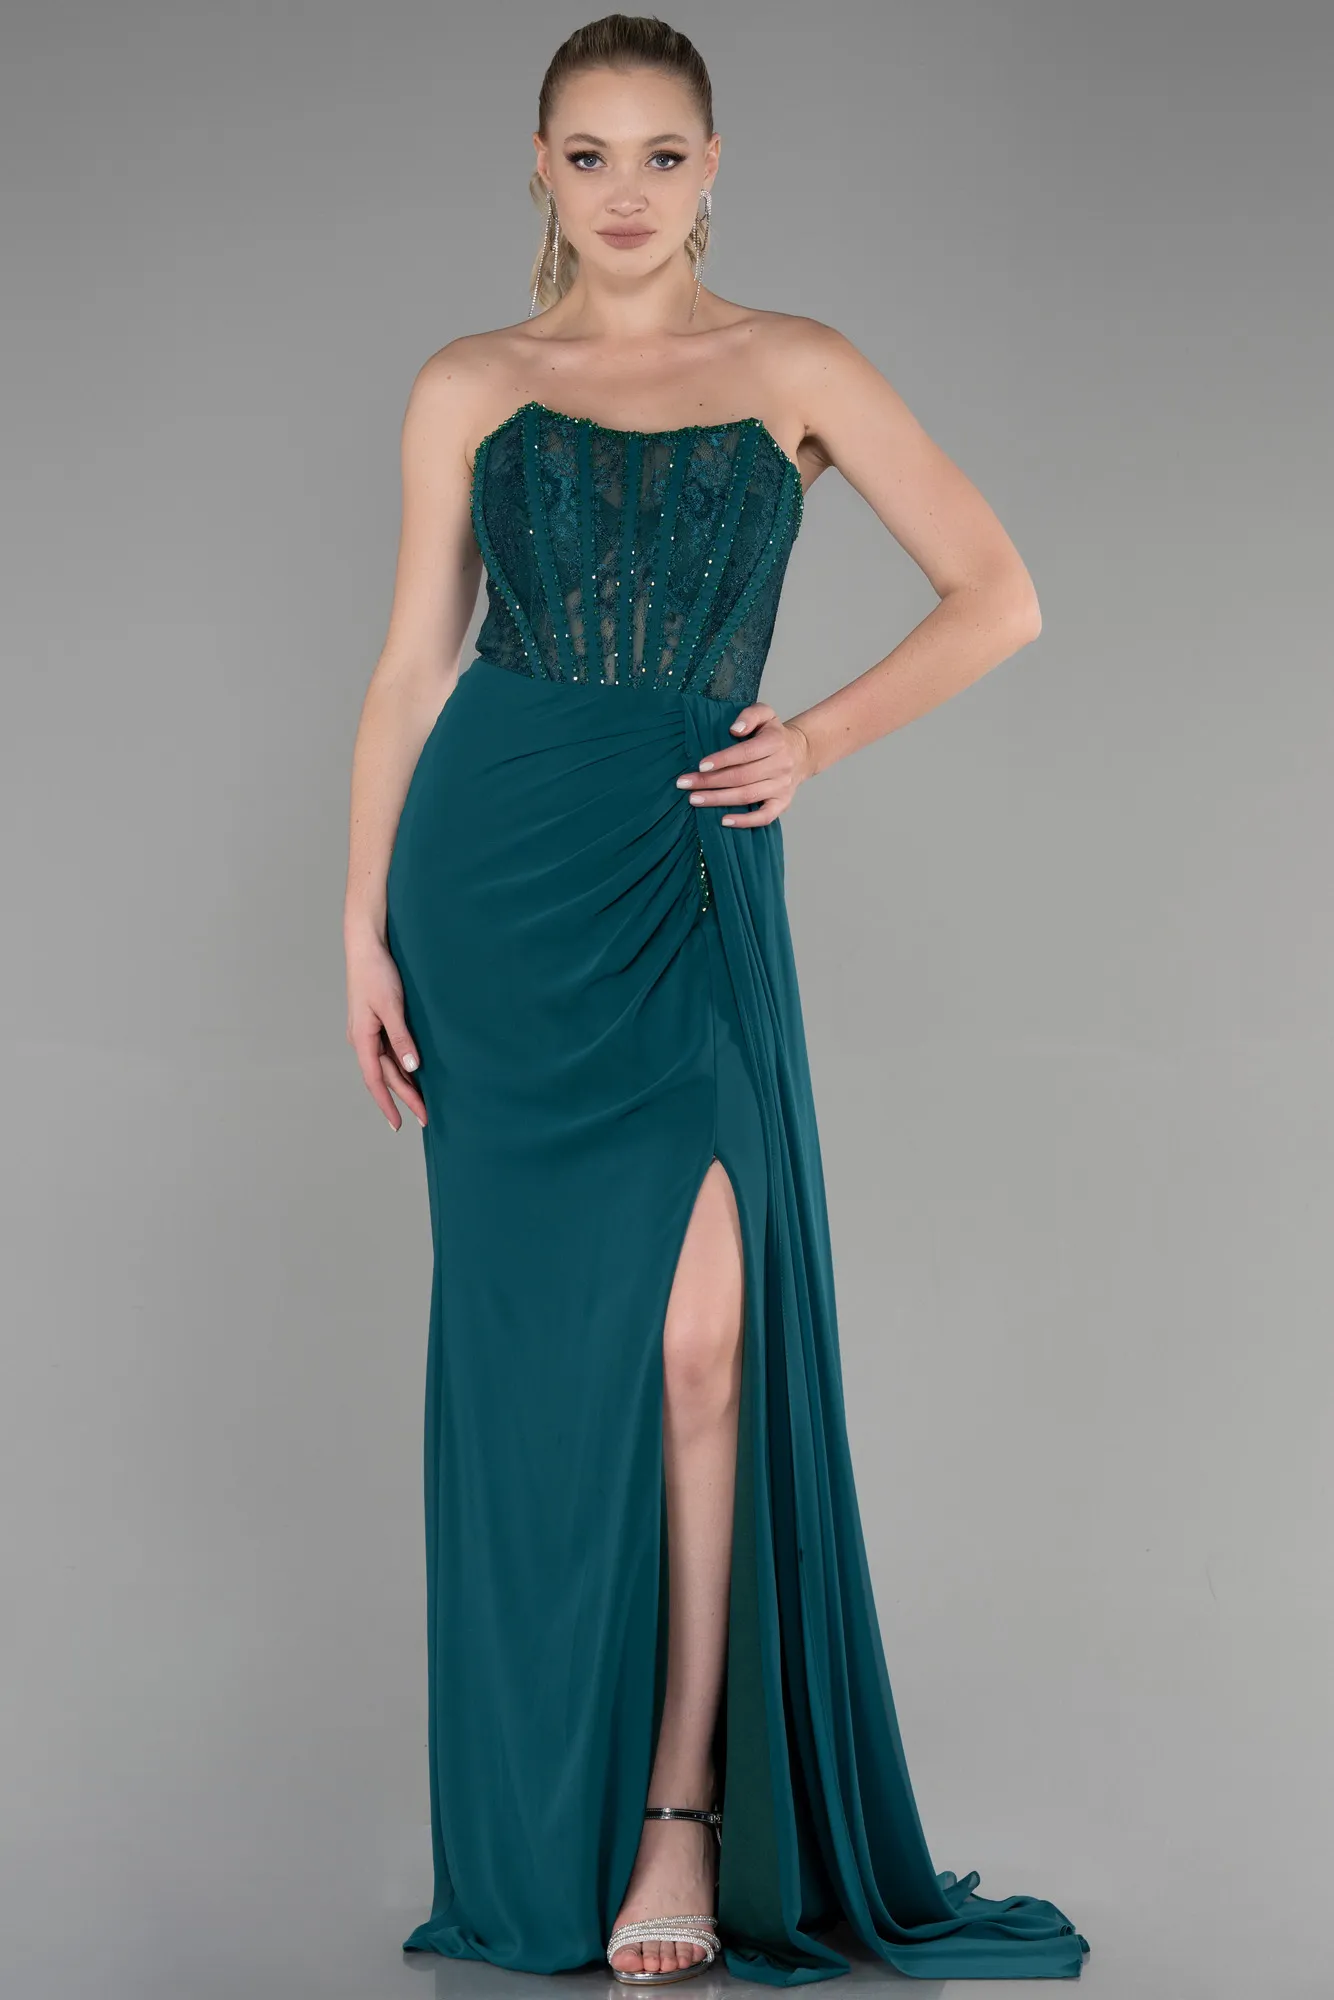 Emerald Green-Long Chiffon Evening Dress ABU3333